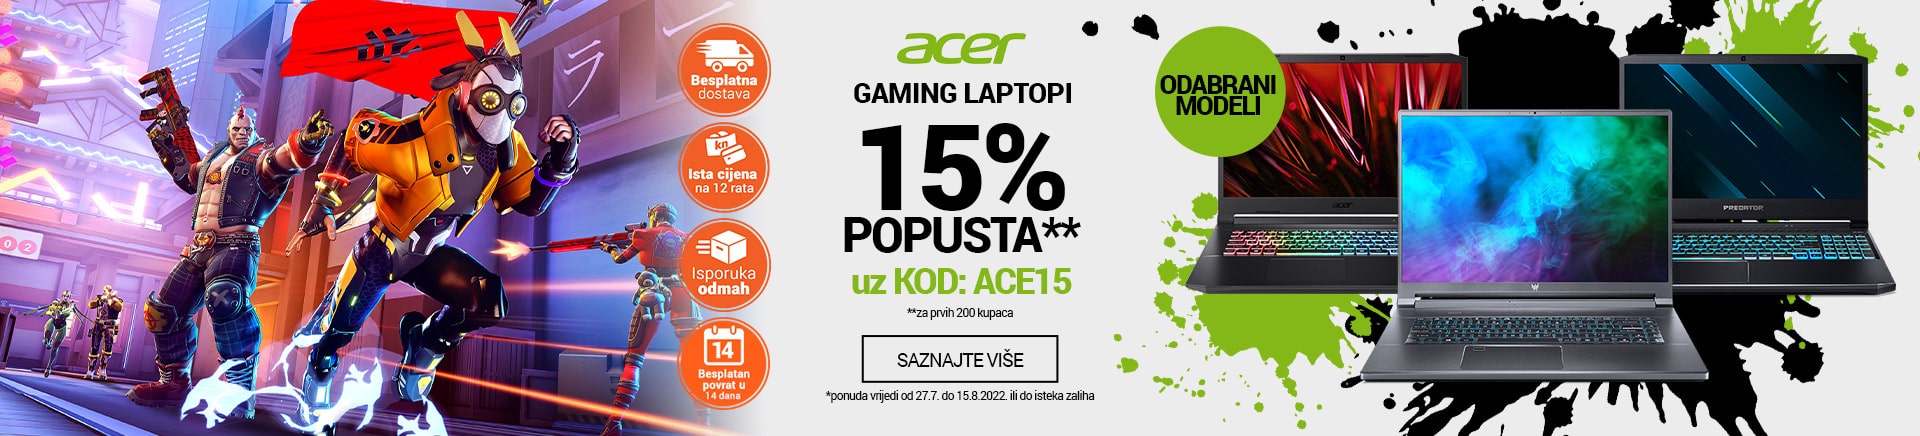 Acer gaming laptopi 15% popusta uz kod ACE15